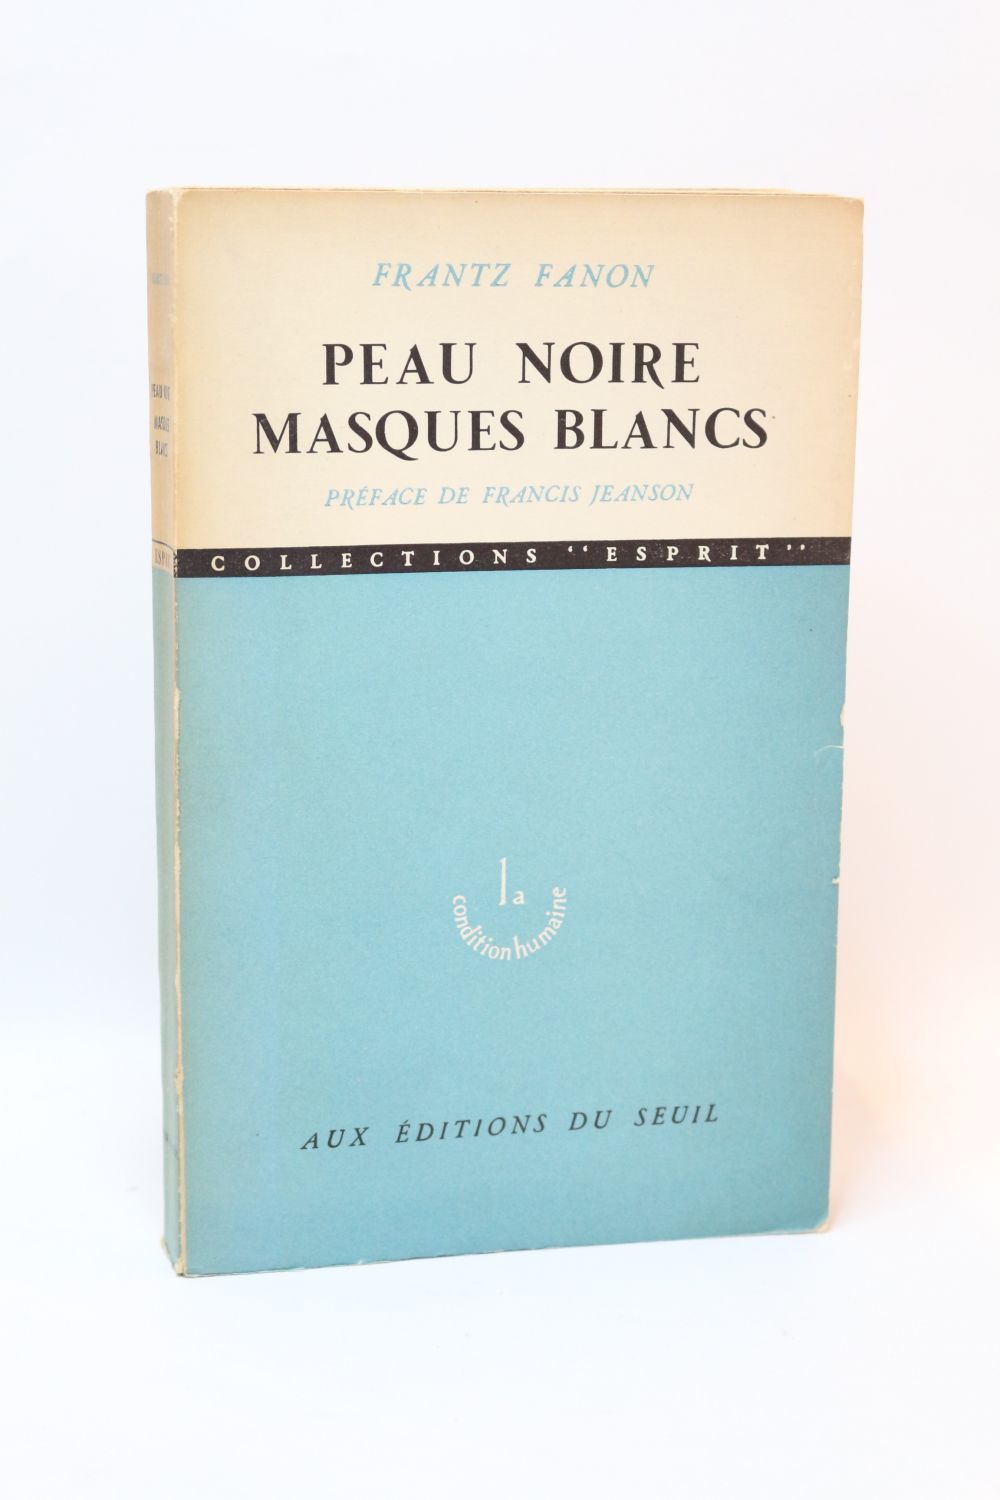 https://www.edition-originale.com/media/h-3000-fanon_frantz_peau-noire-et-masques-blancs_1952_edition-originale_1_72658.jpg